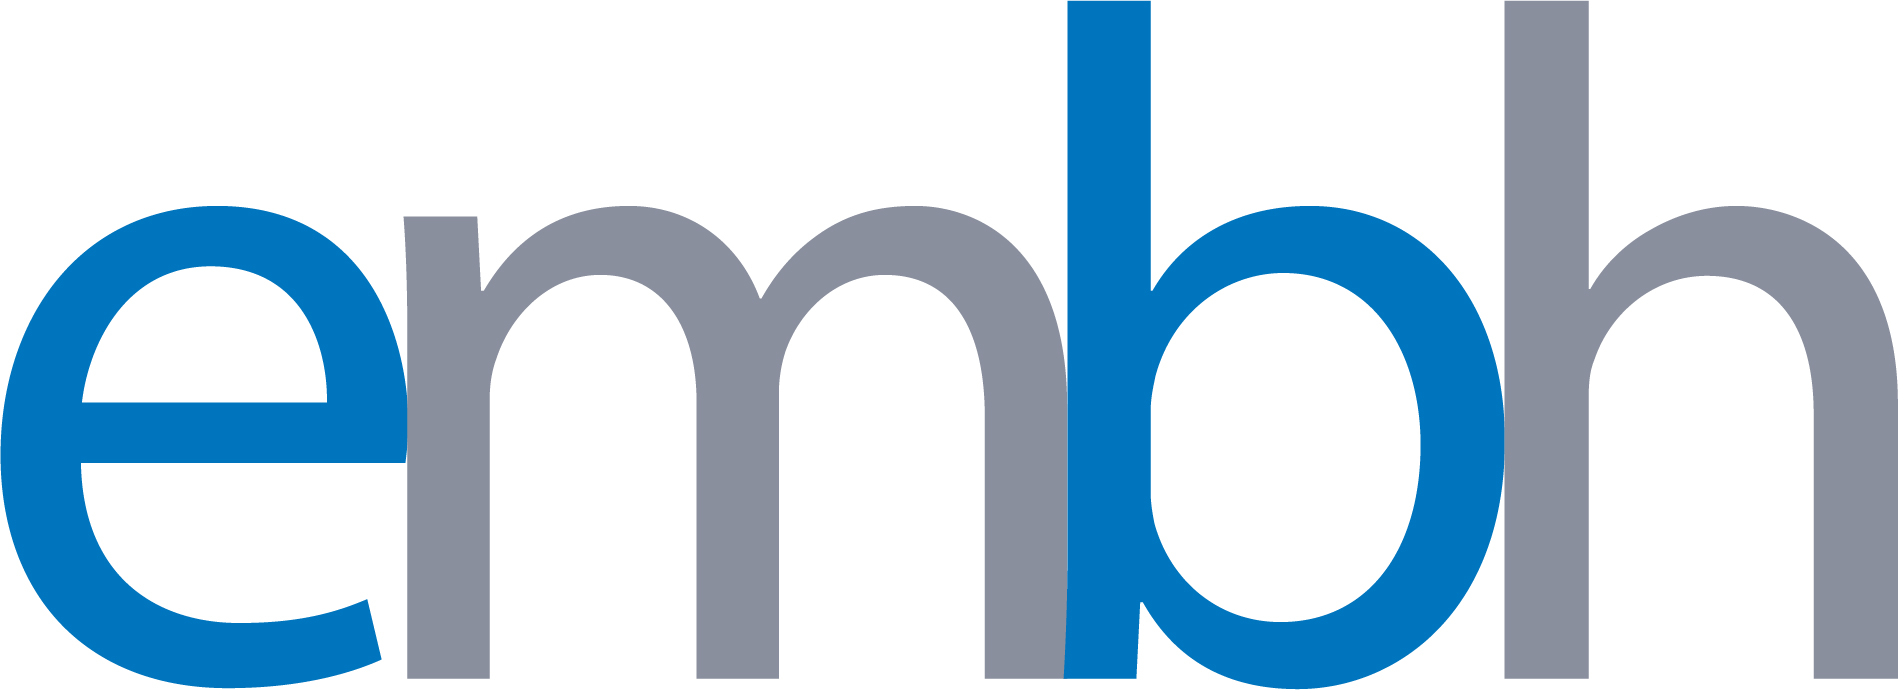 embh Logo